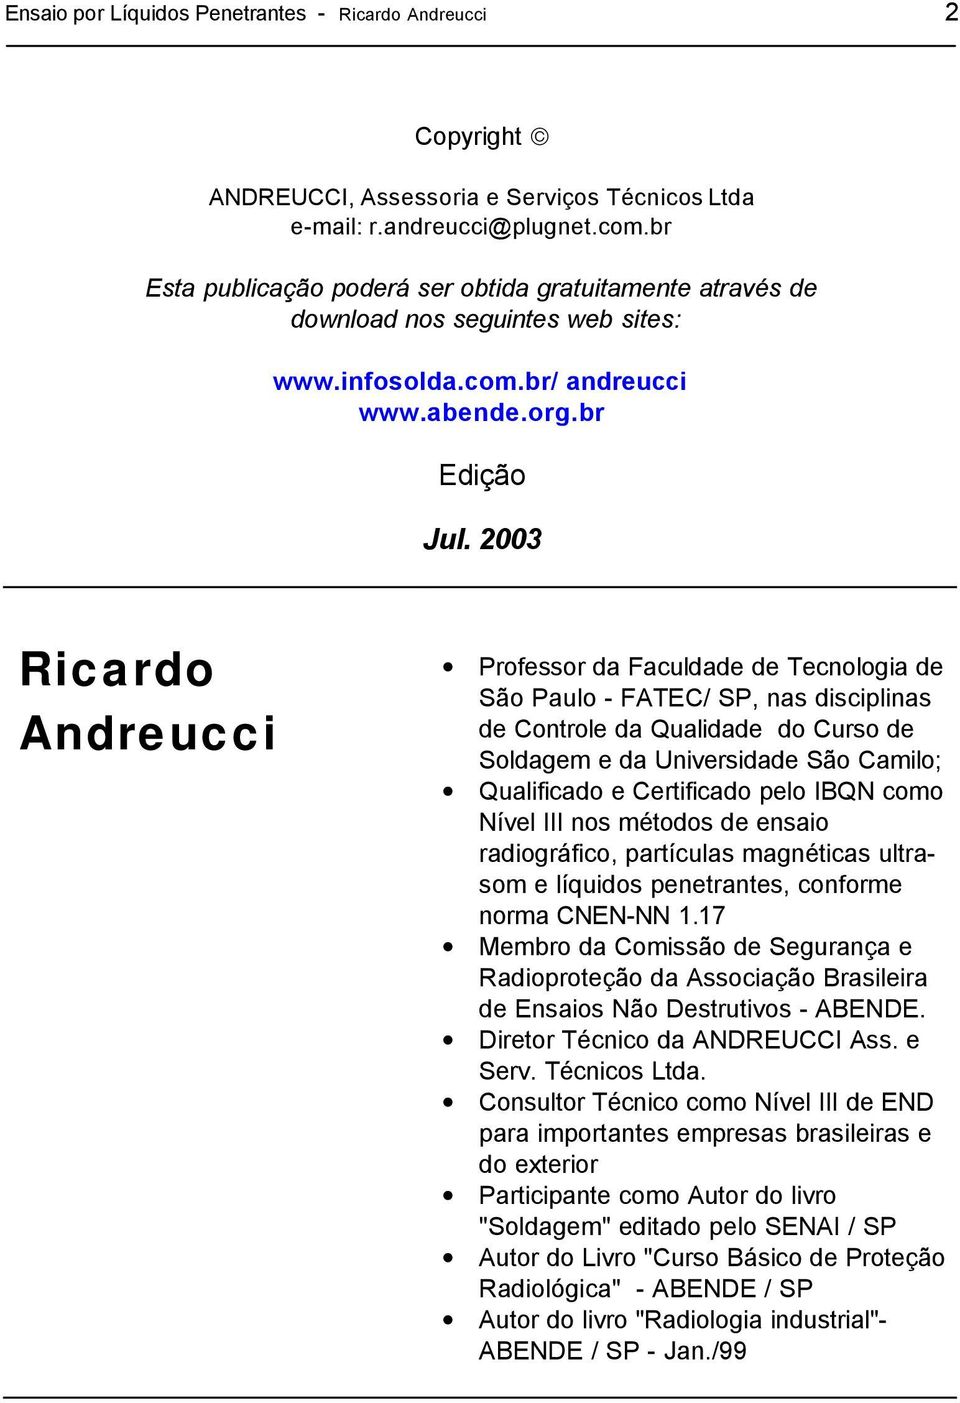 2003 Ricardo Andreucci Professor da Faculdade de Tecnologia de São Paulo - FATEC/ SP, nas disciplinas de Controle da Qualidade do Curso de Soldagem e da Universidade São Camilo; Qualificado e